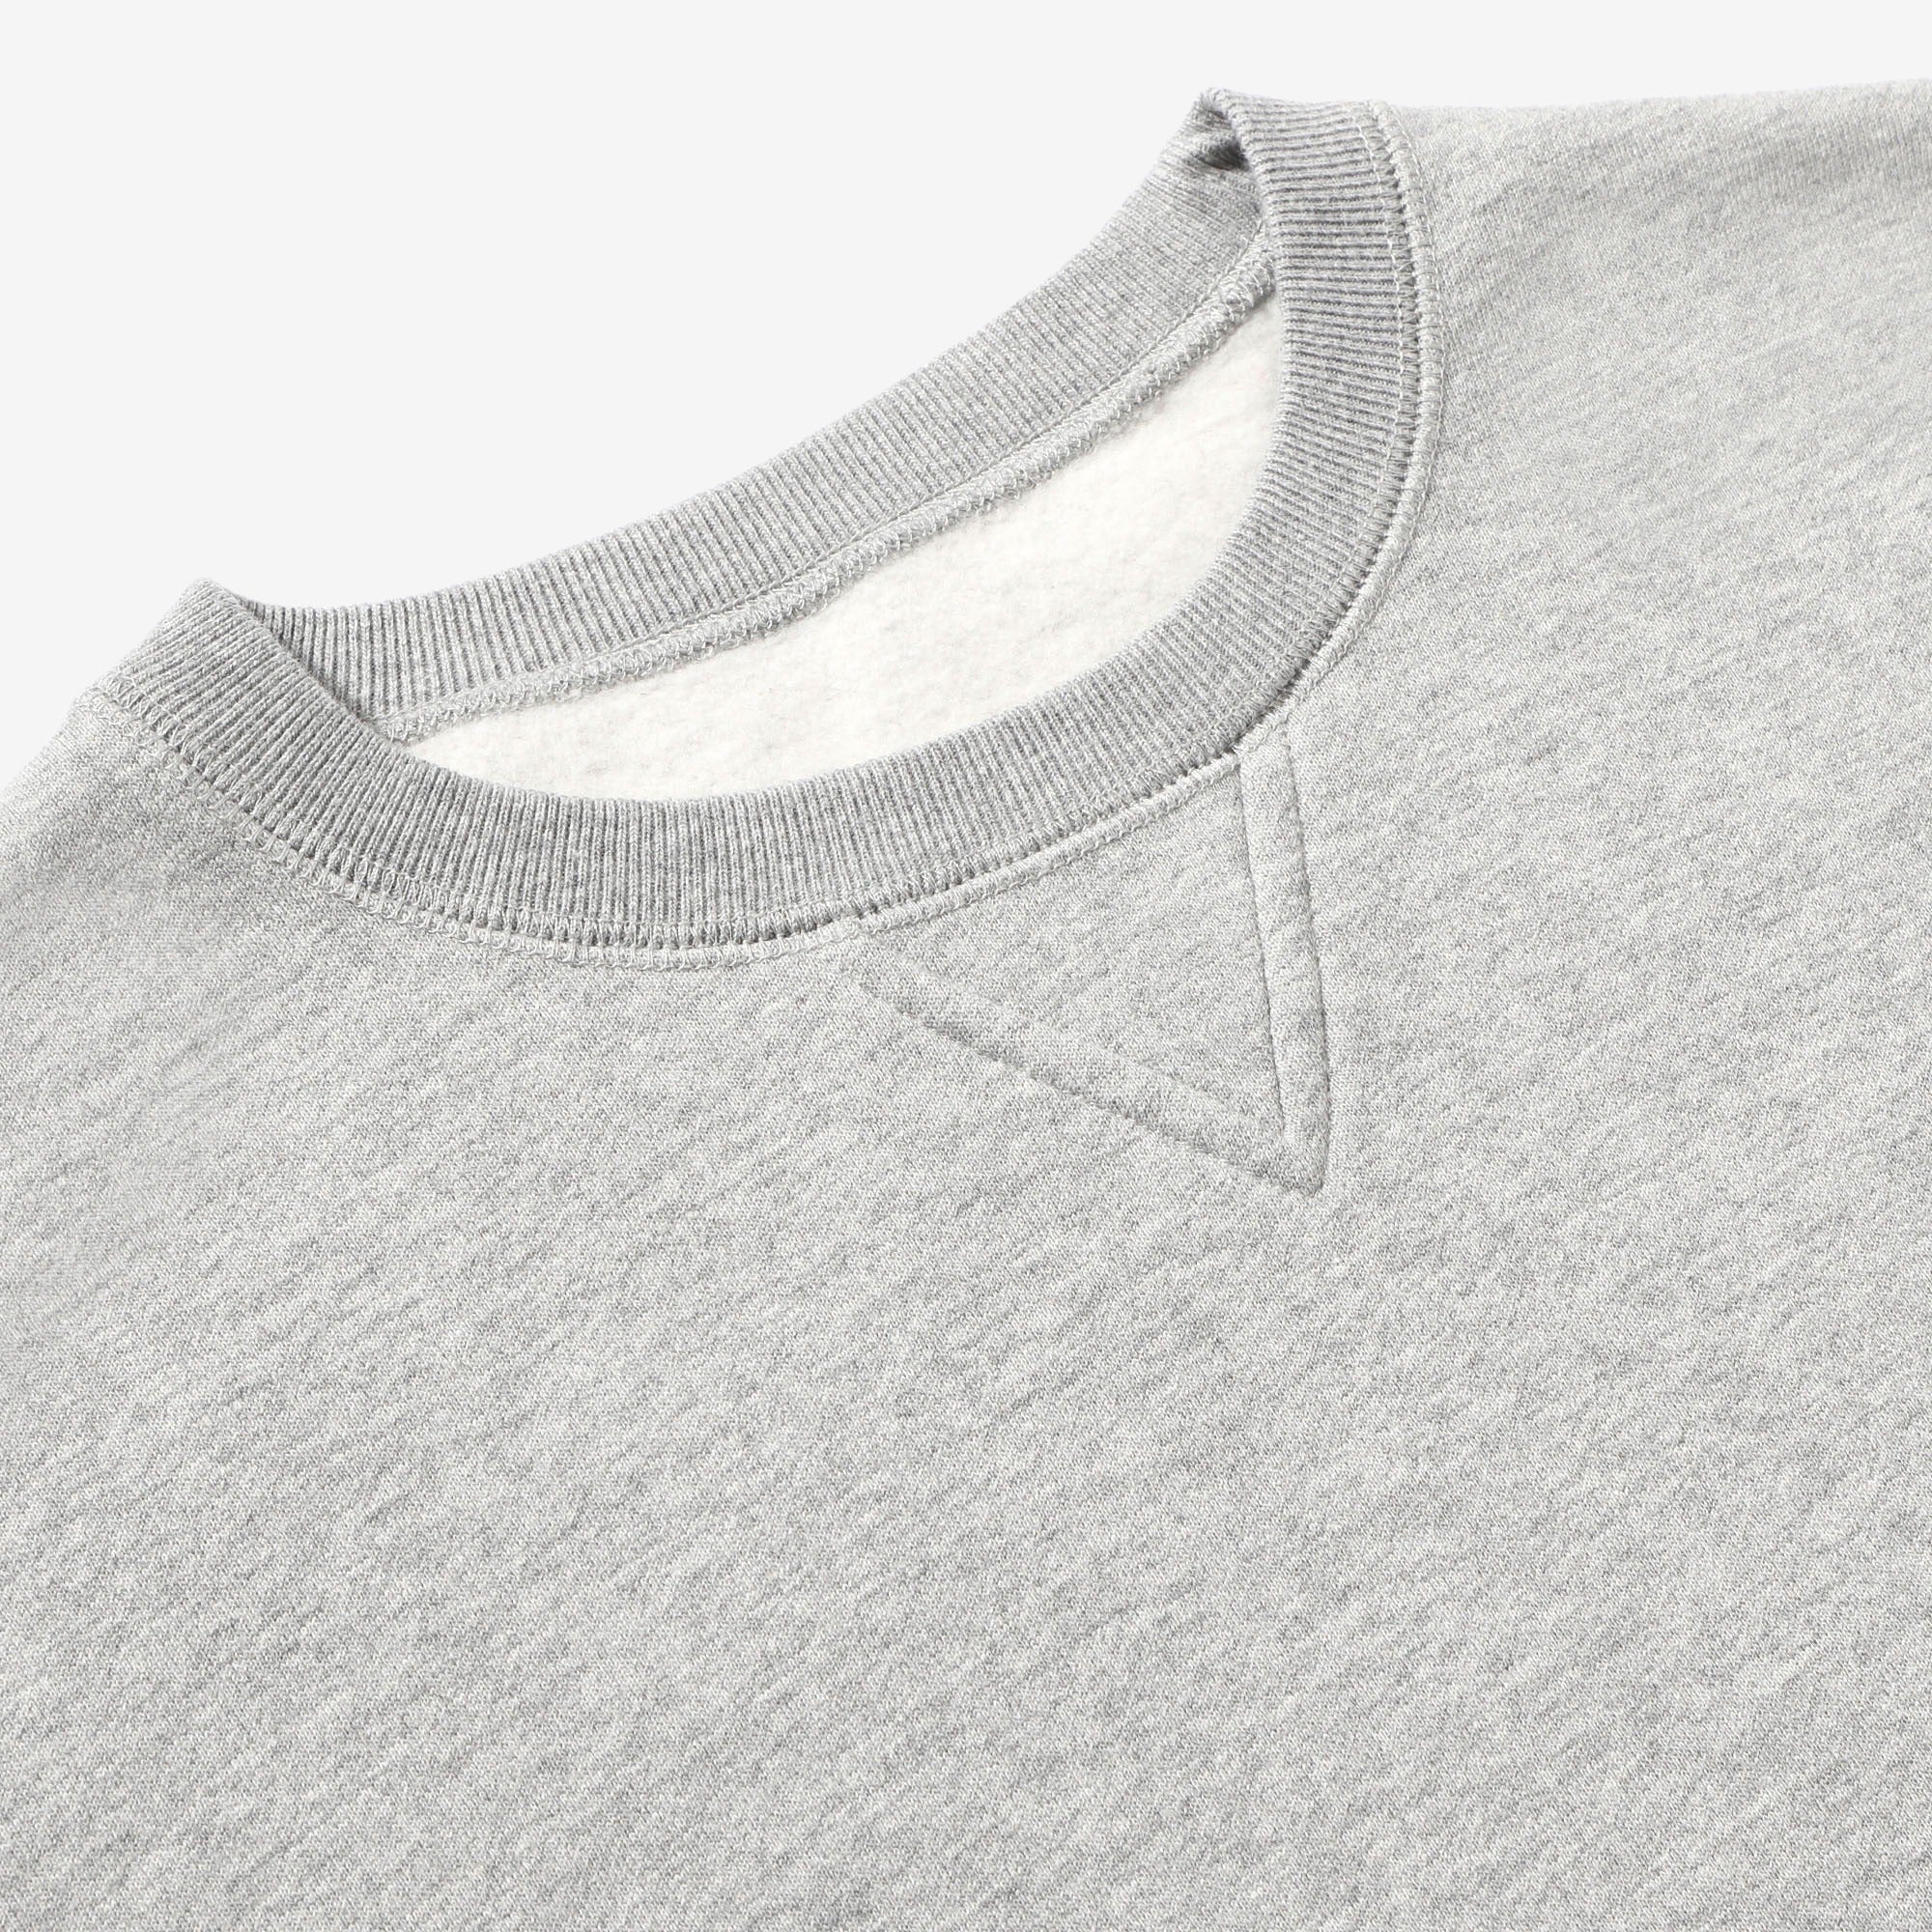 Fleece Sweatshirt - Grey Mix